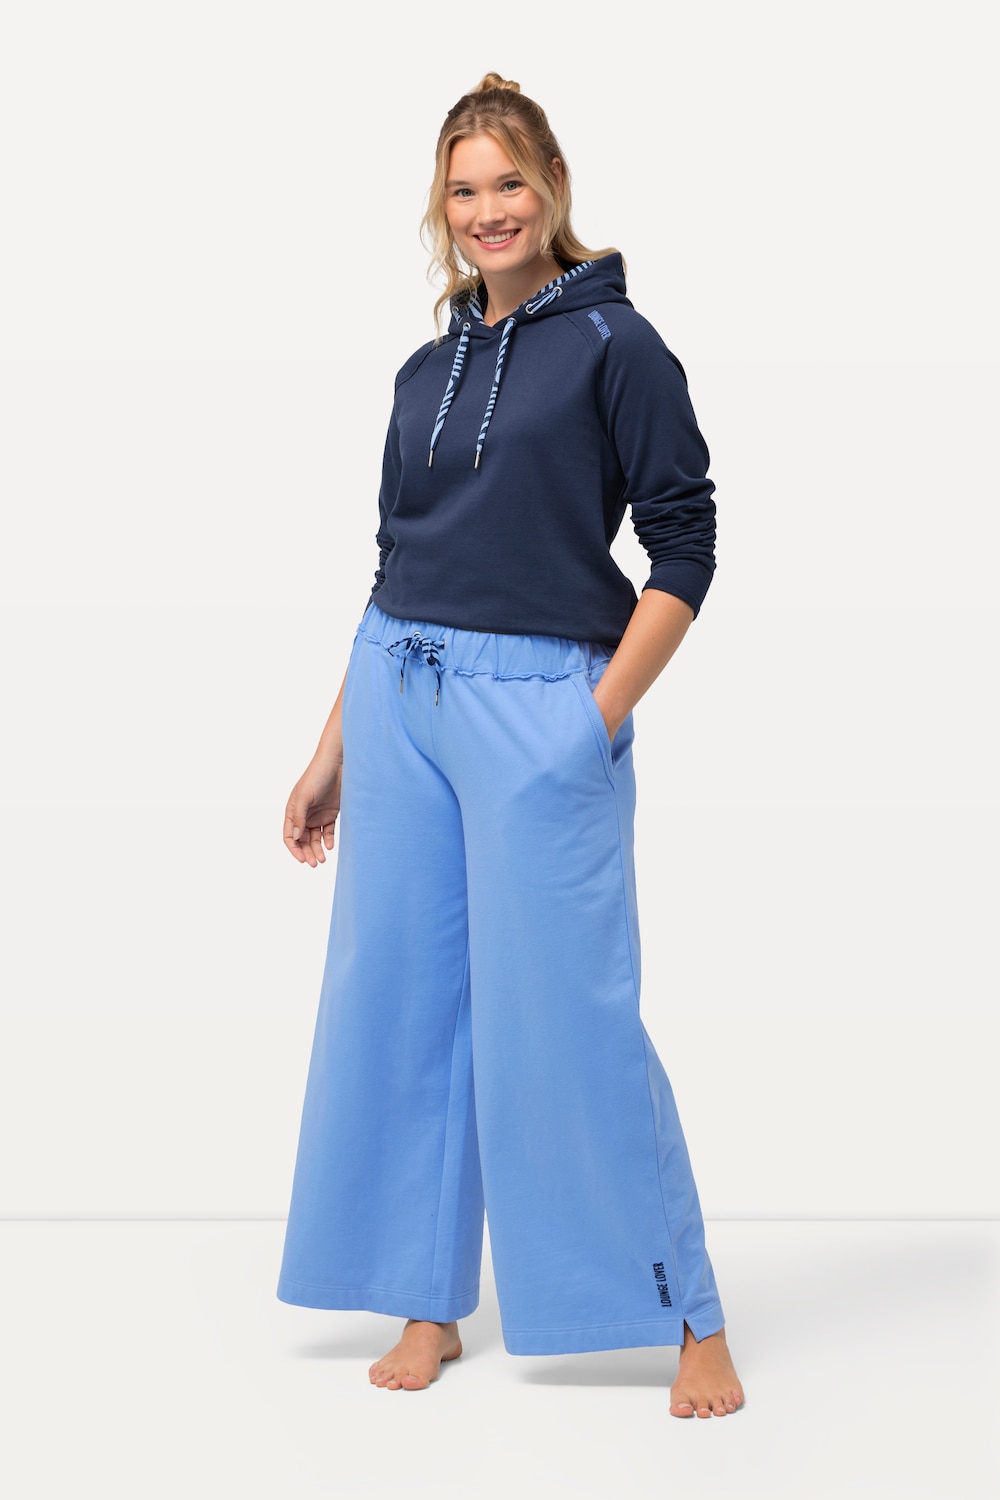 Grote Maten Loungewear-broek, Dames, blauw, Maat: 50/52, Katoen/Polyester, Ulla Popken